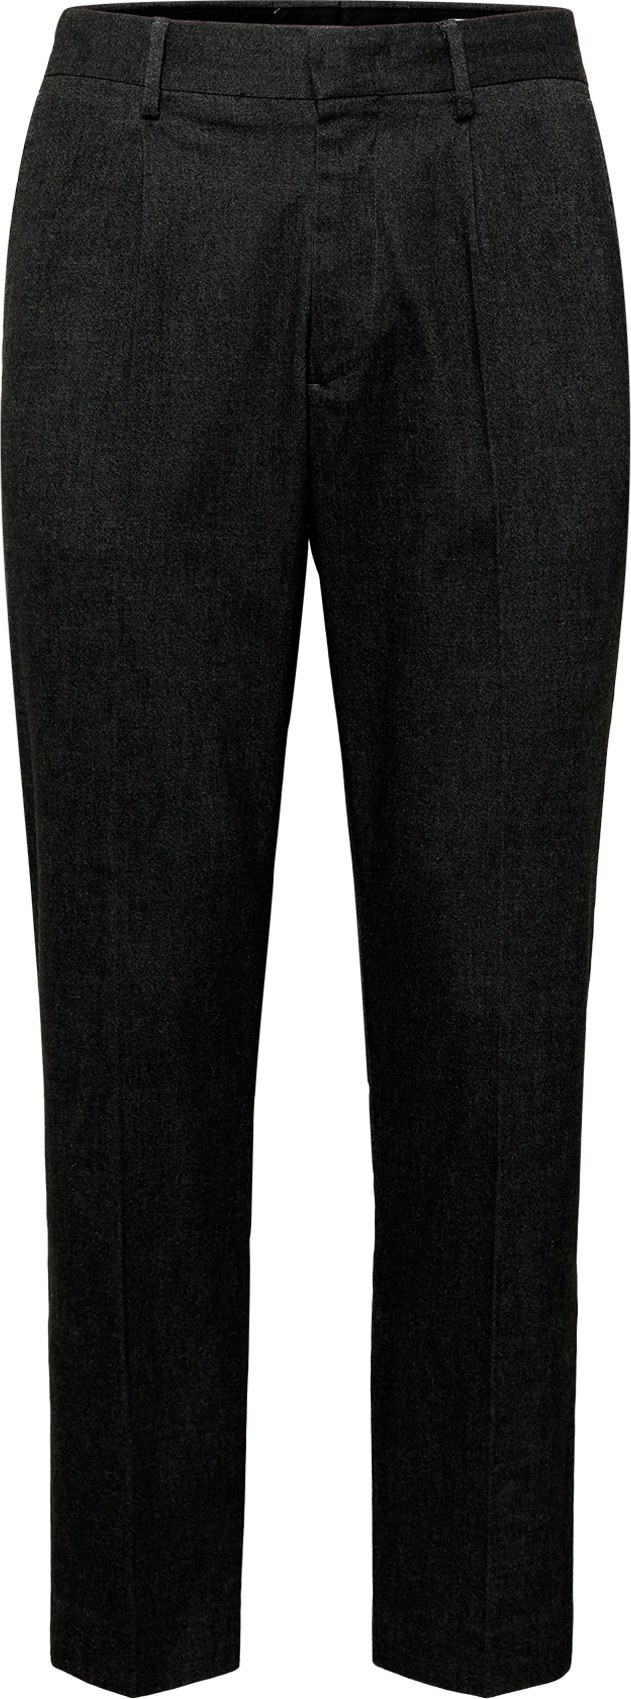 Kalhoty se sklady v pase 'Bill' NN07 černá